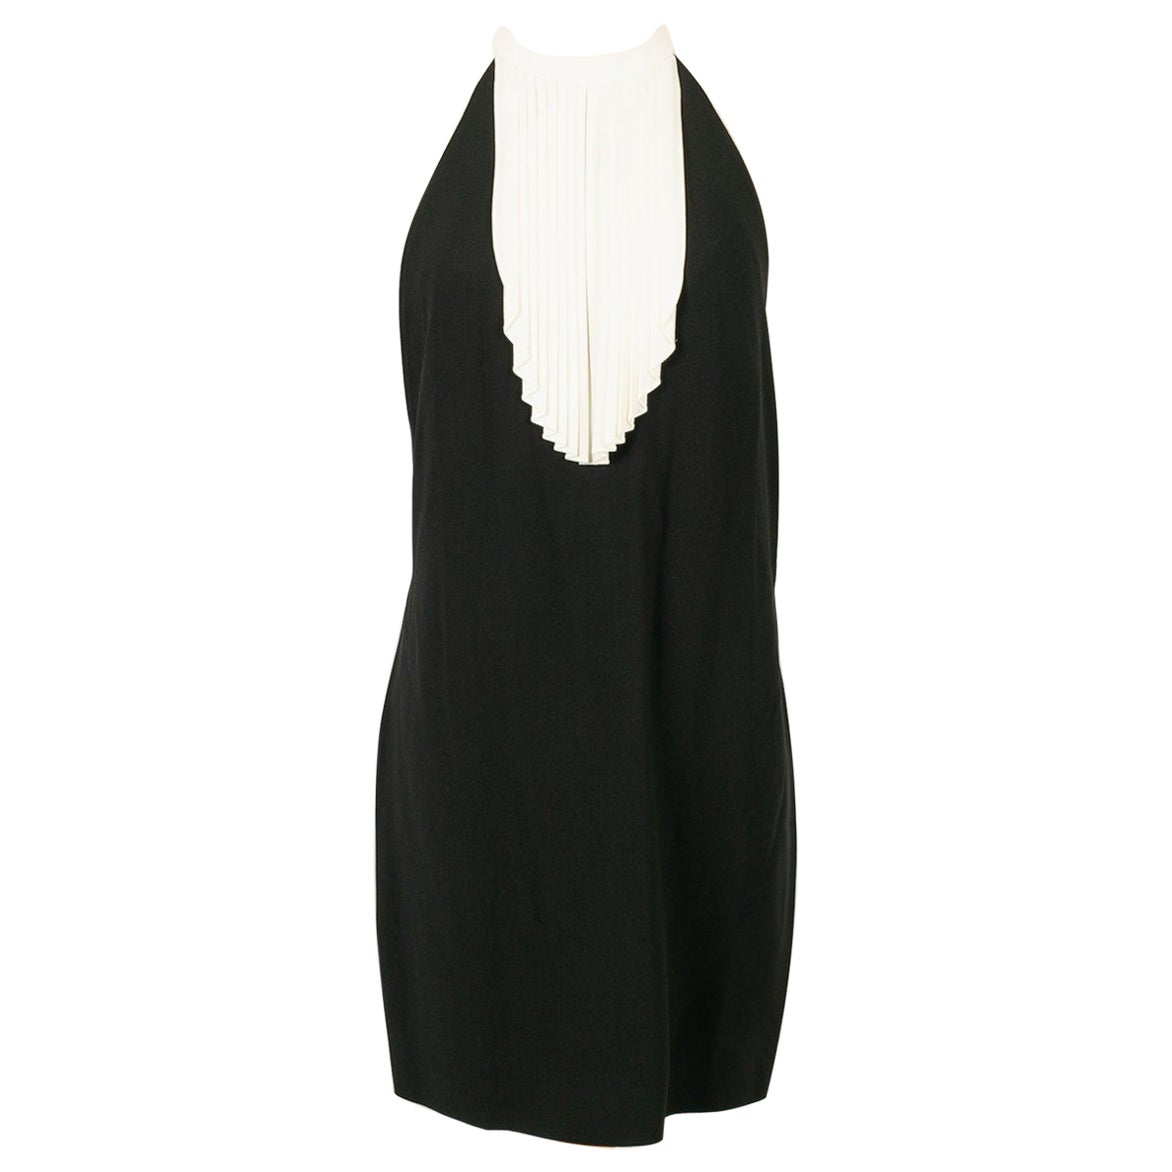 Yves Saint Laurent Short Backless Black and White Dress For Sale